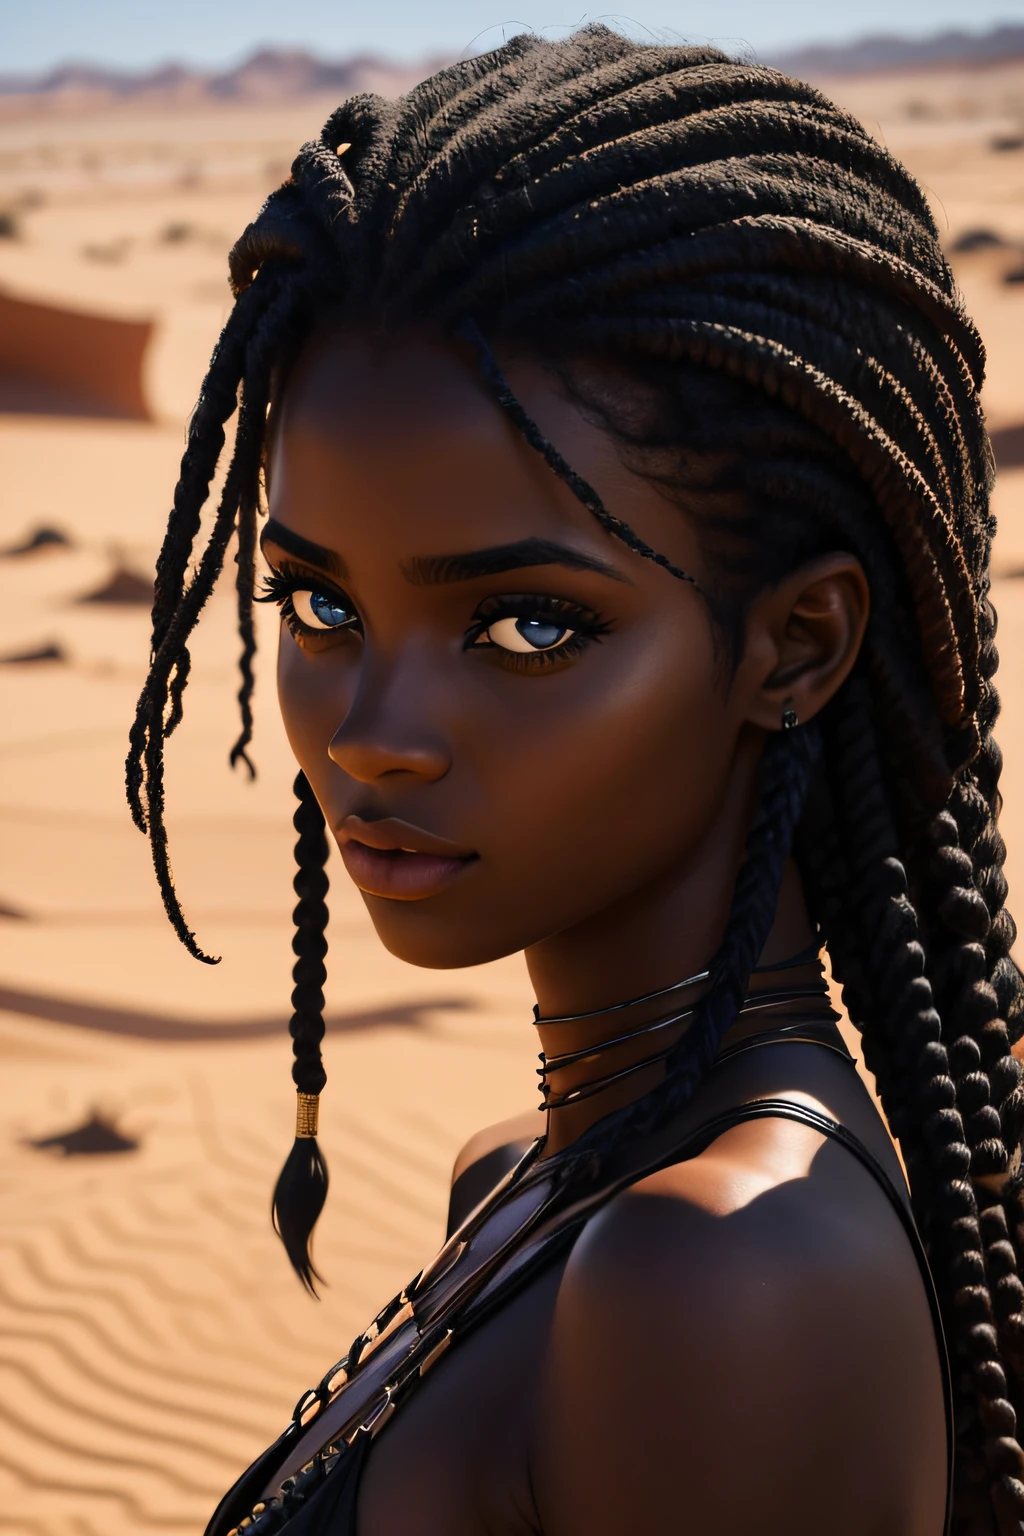 黑人妇女, 棕色的眼睛, 年龄 19 岁, 行走在沙漠中, 湿的, 卷发, 诱人的样子